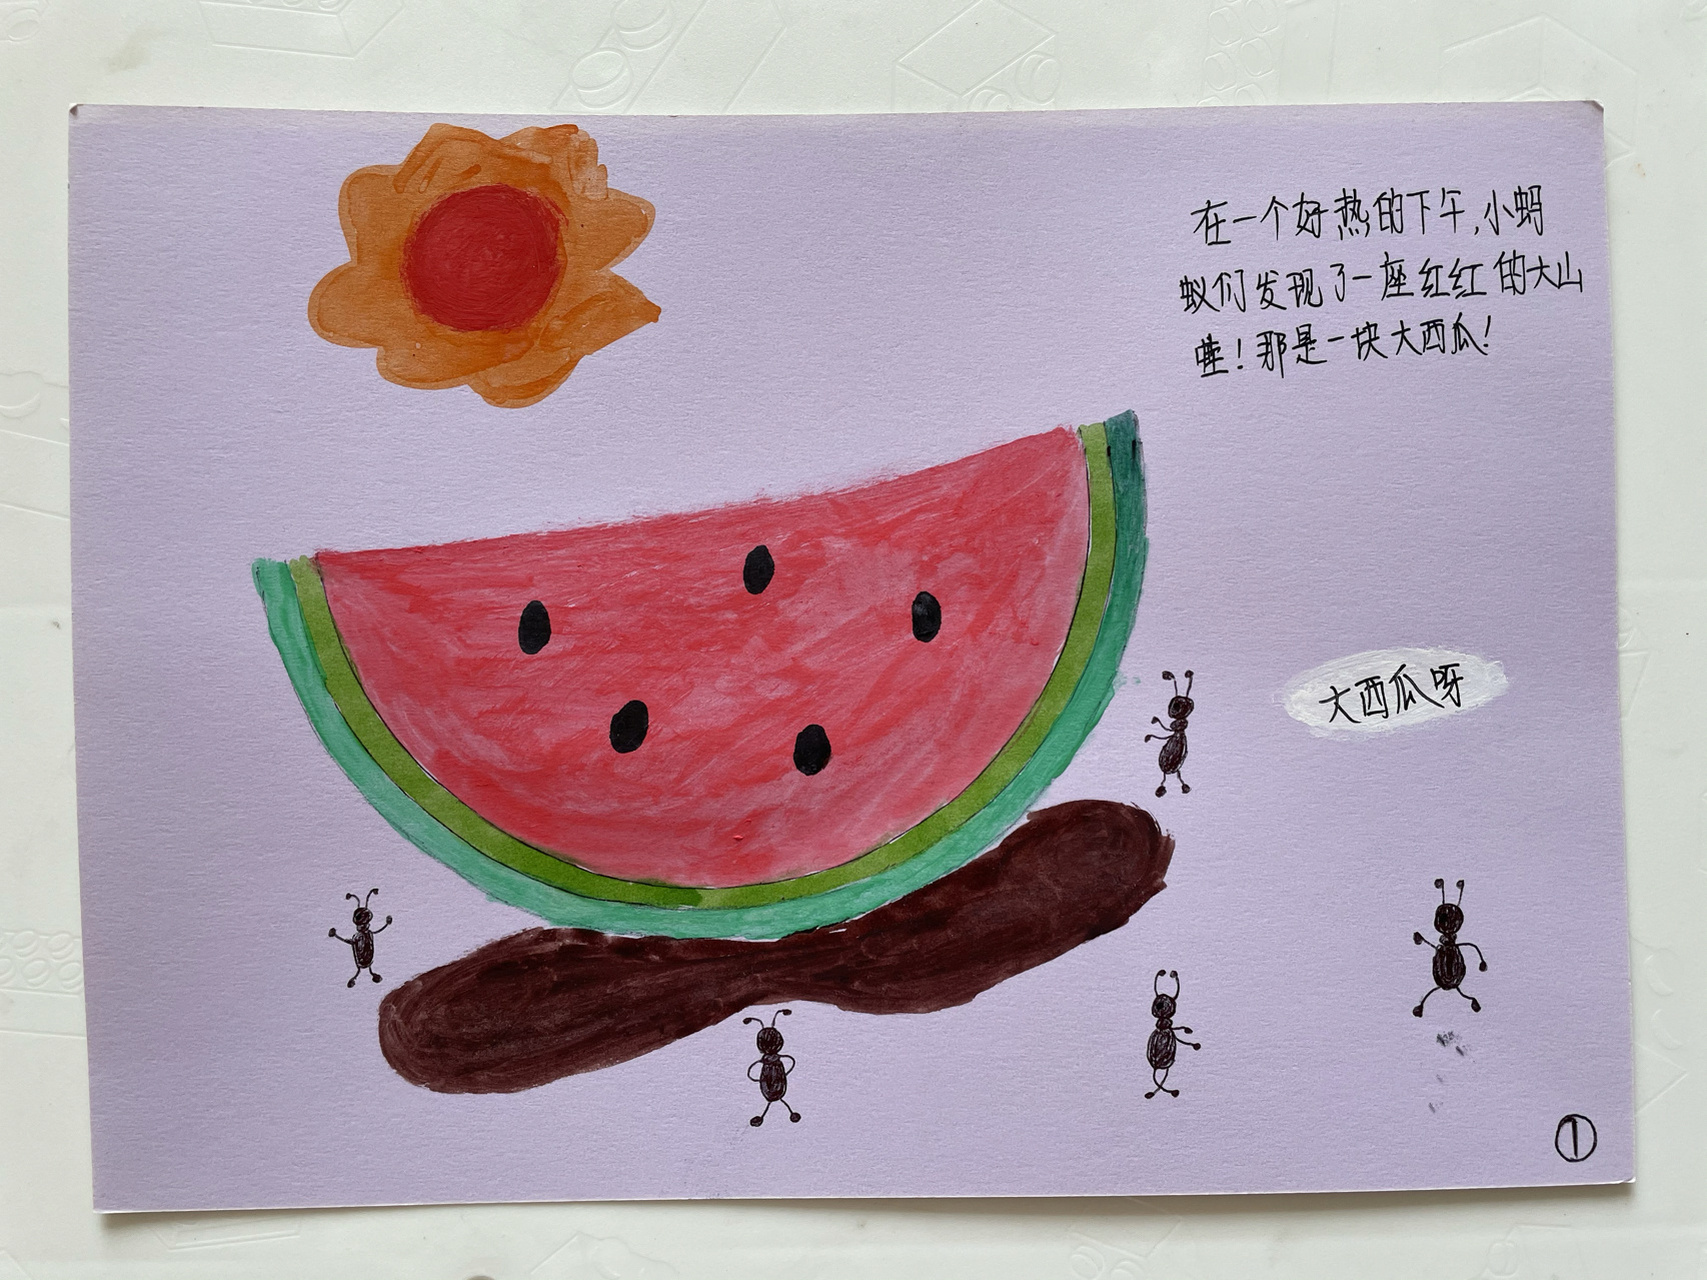 幼儿园自制绘本 幼儿园老师布置的作业,制作一本关于水果的图书,上网